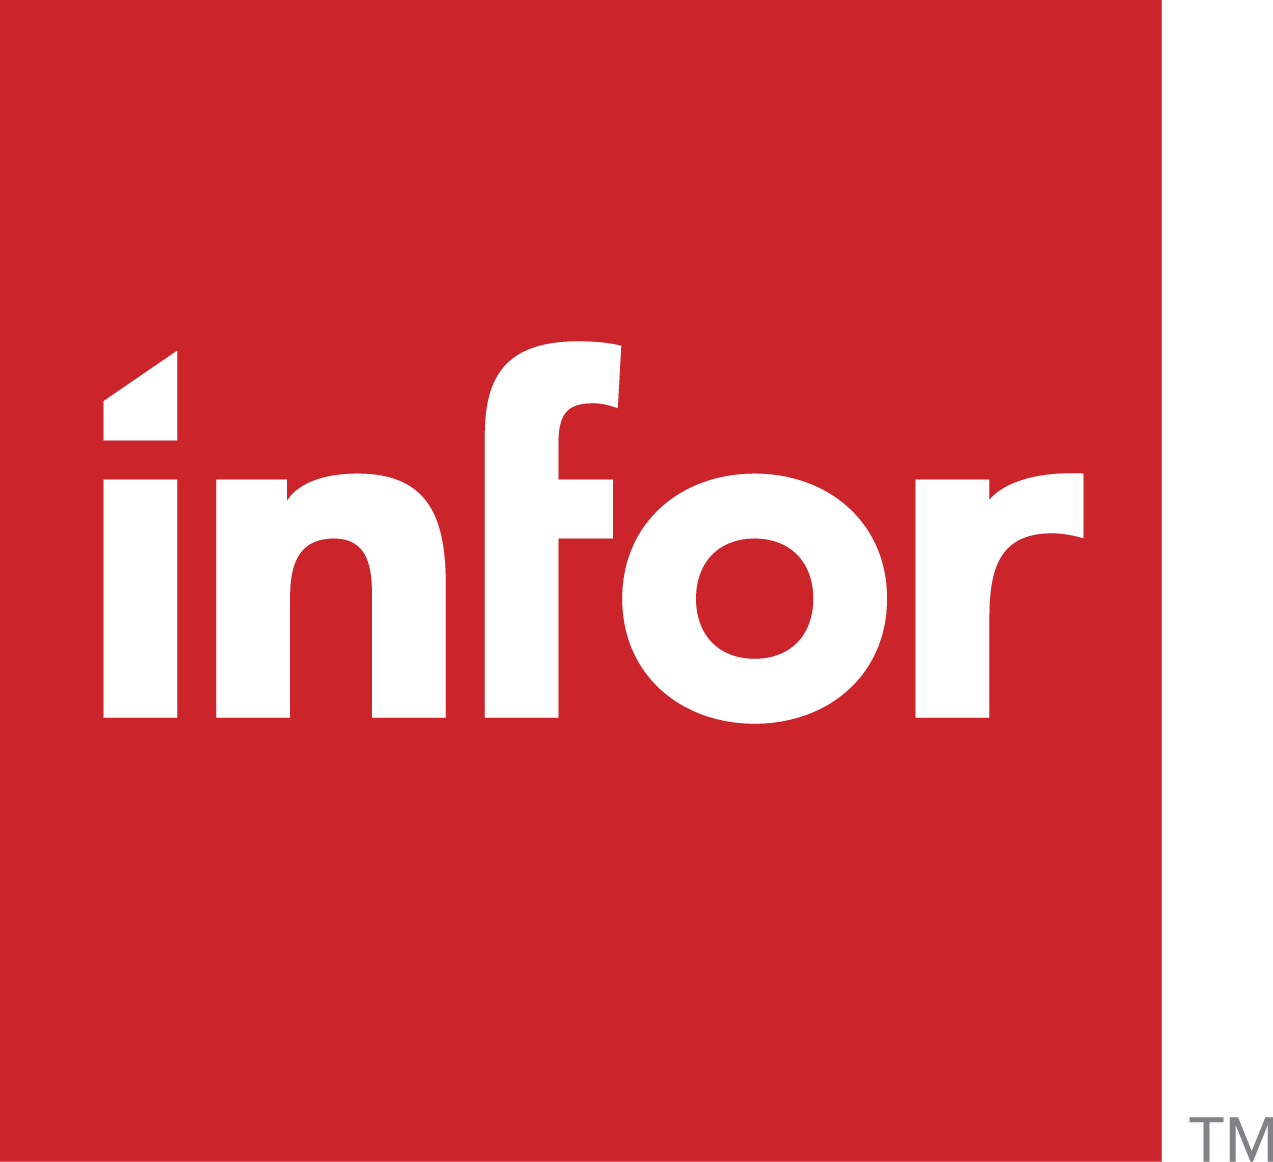 Infor Logo - Infor Global Solutions